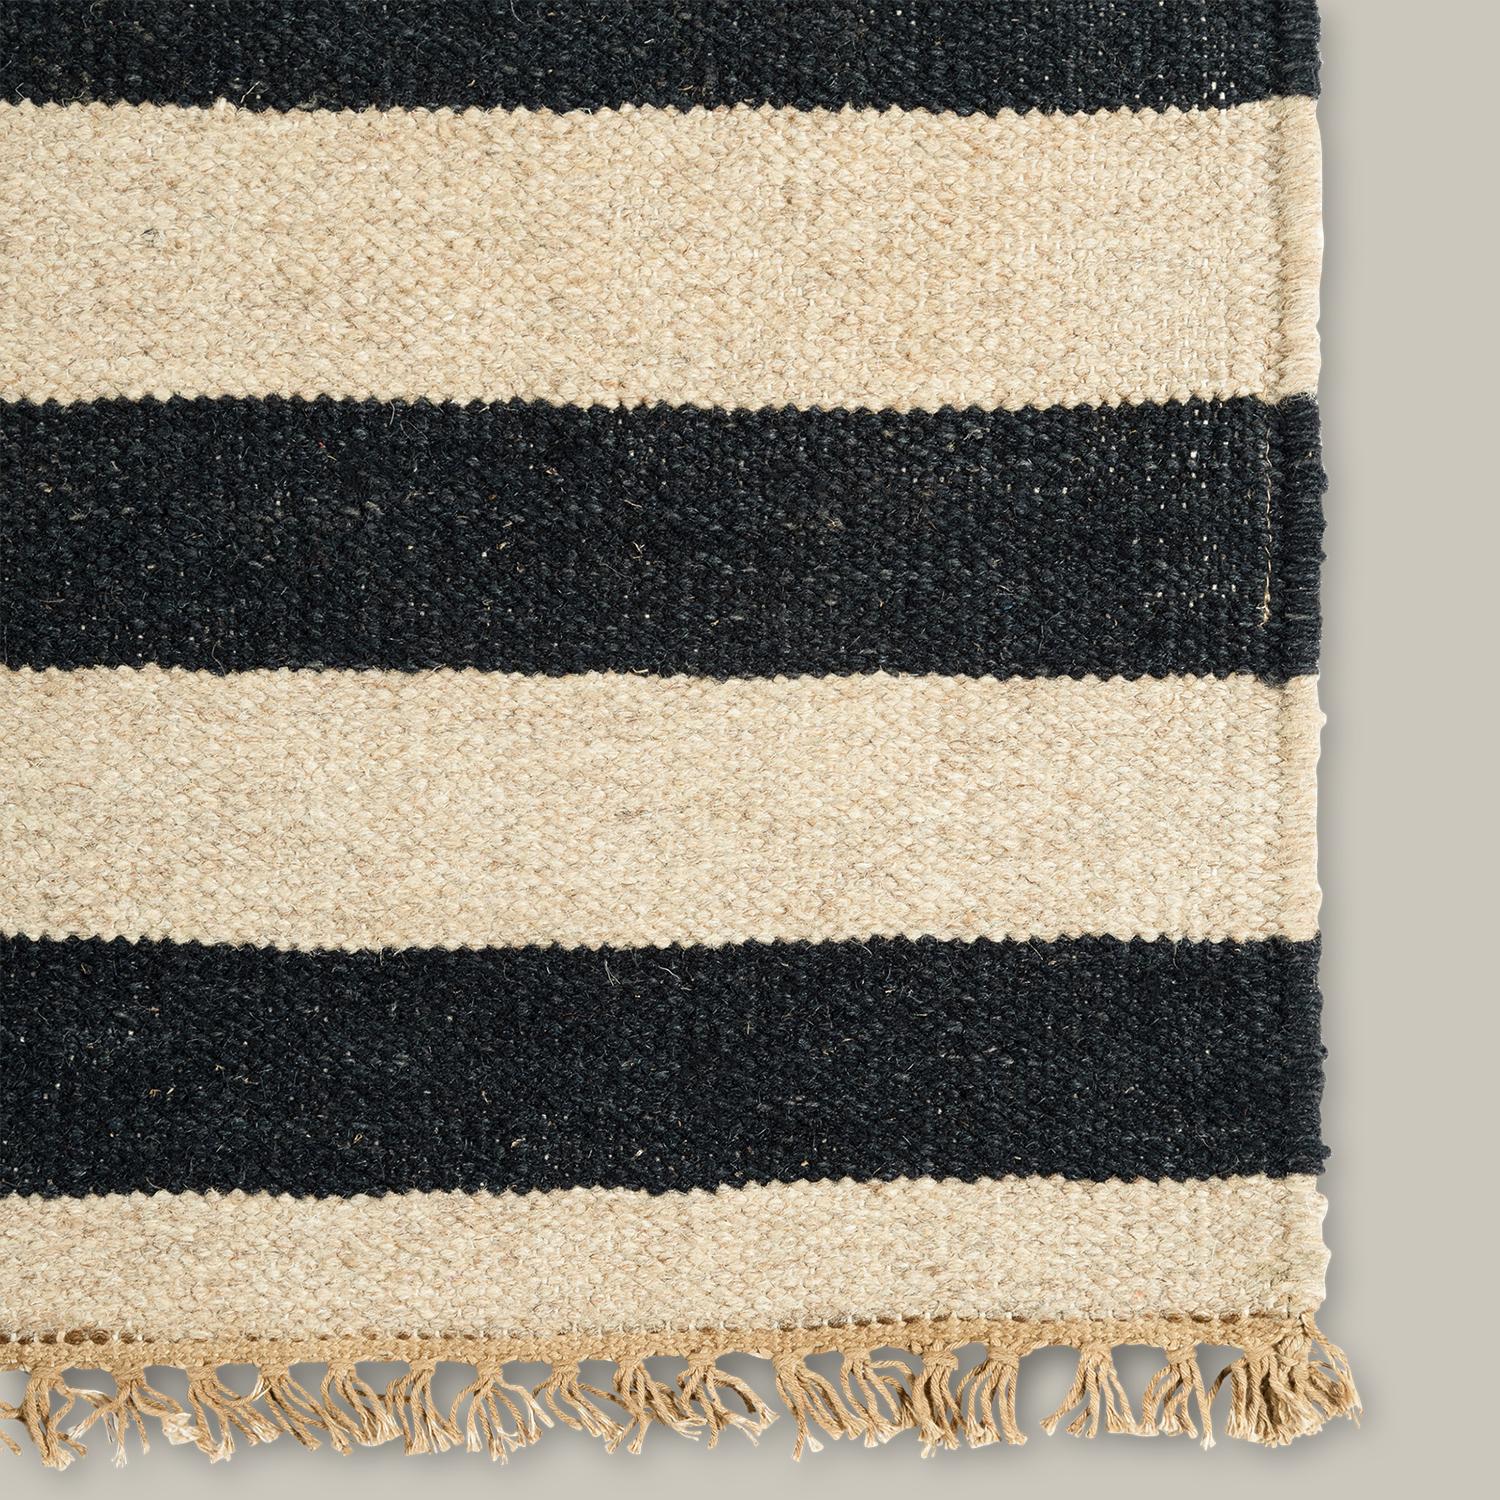 Die Metlili-Kollektion ist von einem Gefühl der Bewegung durchdrungen und verweist auf die herrliche Unvollkommenheit, die in allen handgefertigten Textilien zu finden ist. Handgewebt aus Wolle und mit einer antiken Waschung versehen, die die Farben